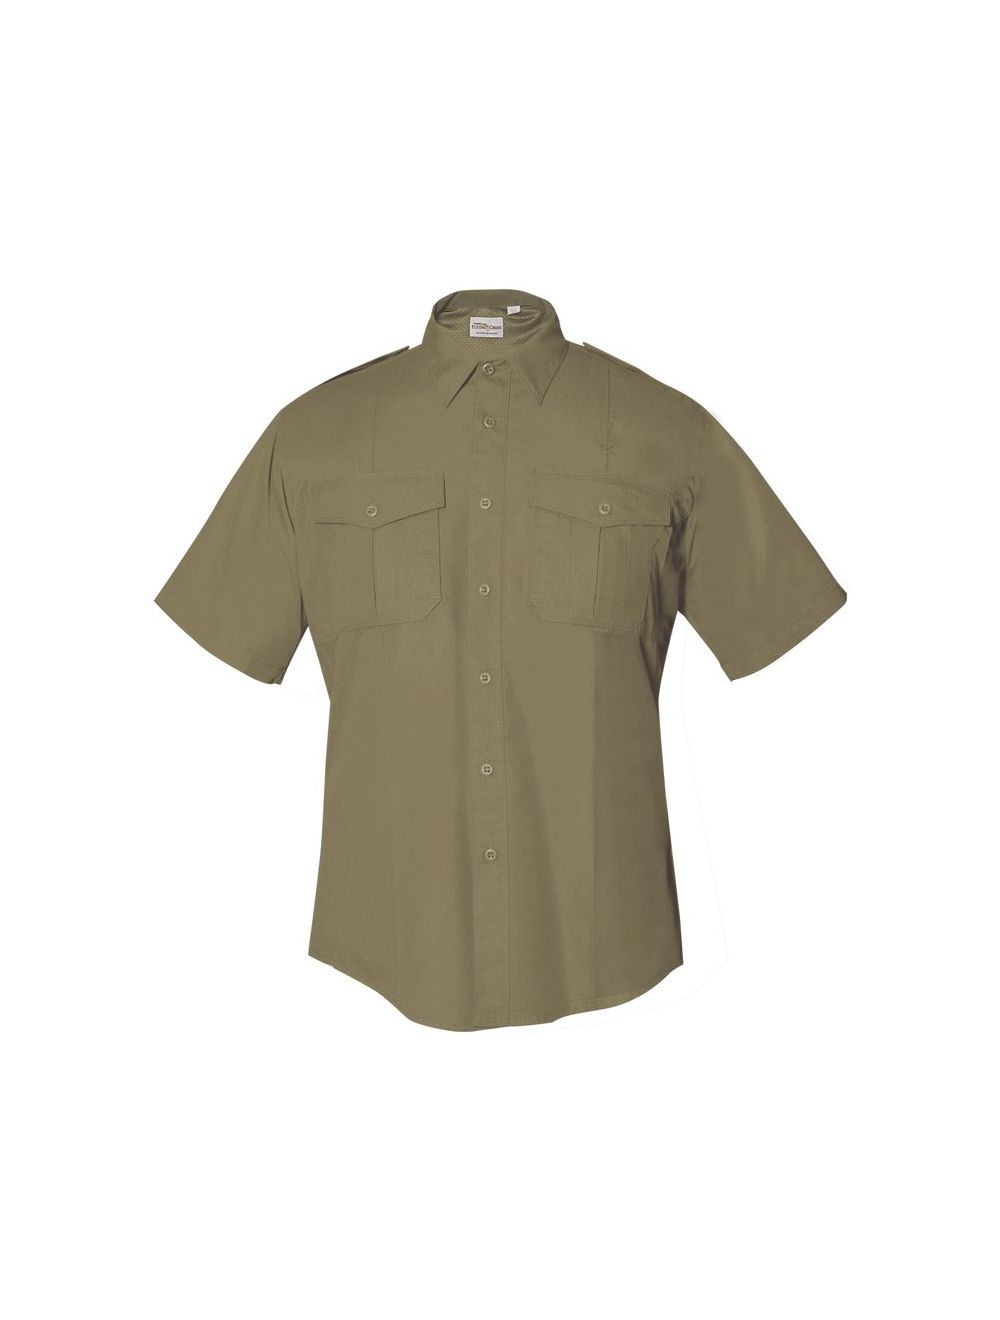 FX STAT Class B Short Sleeve Shirt